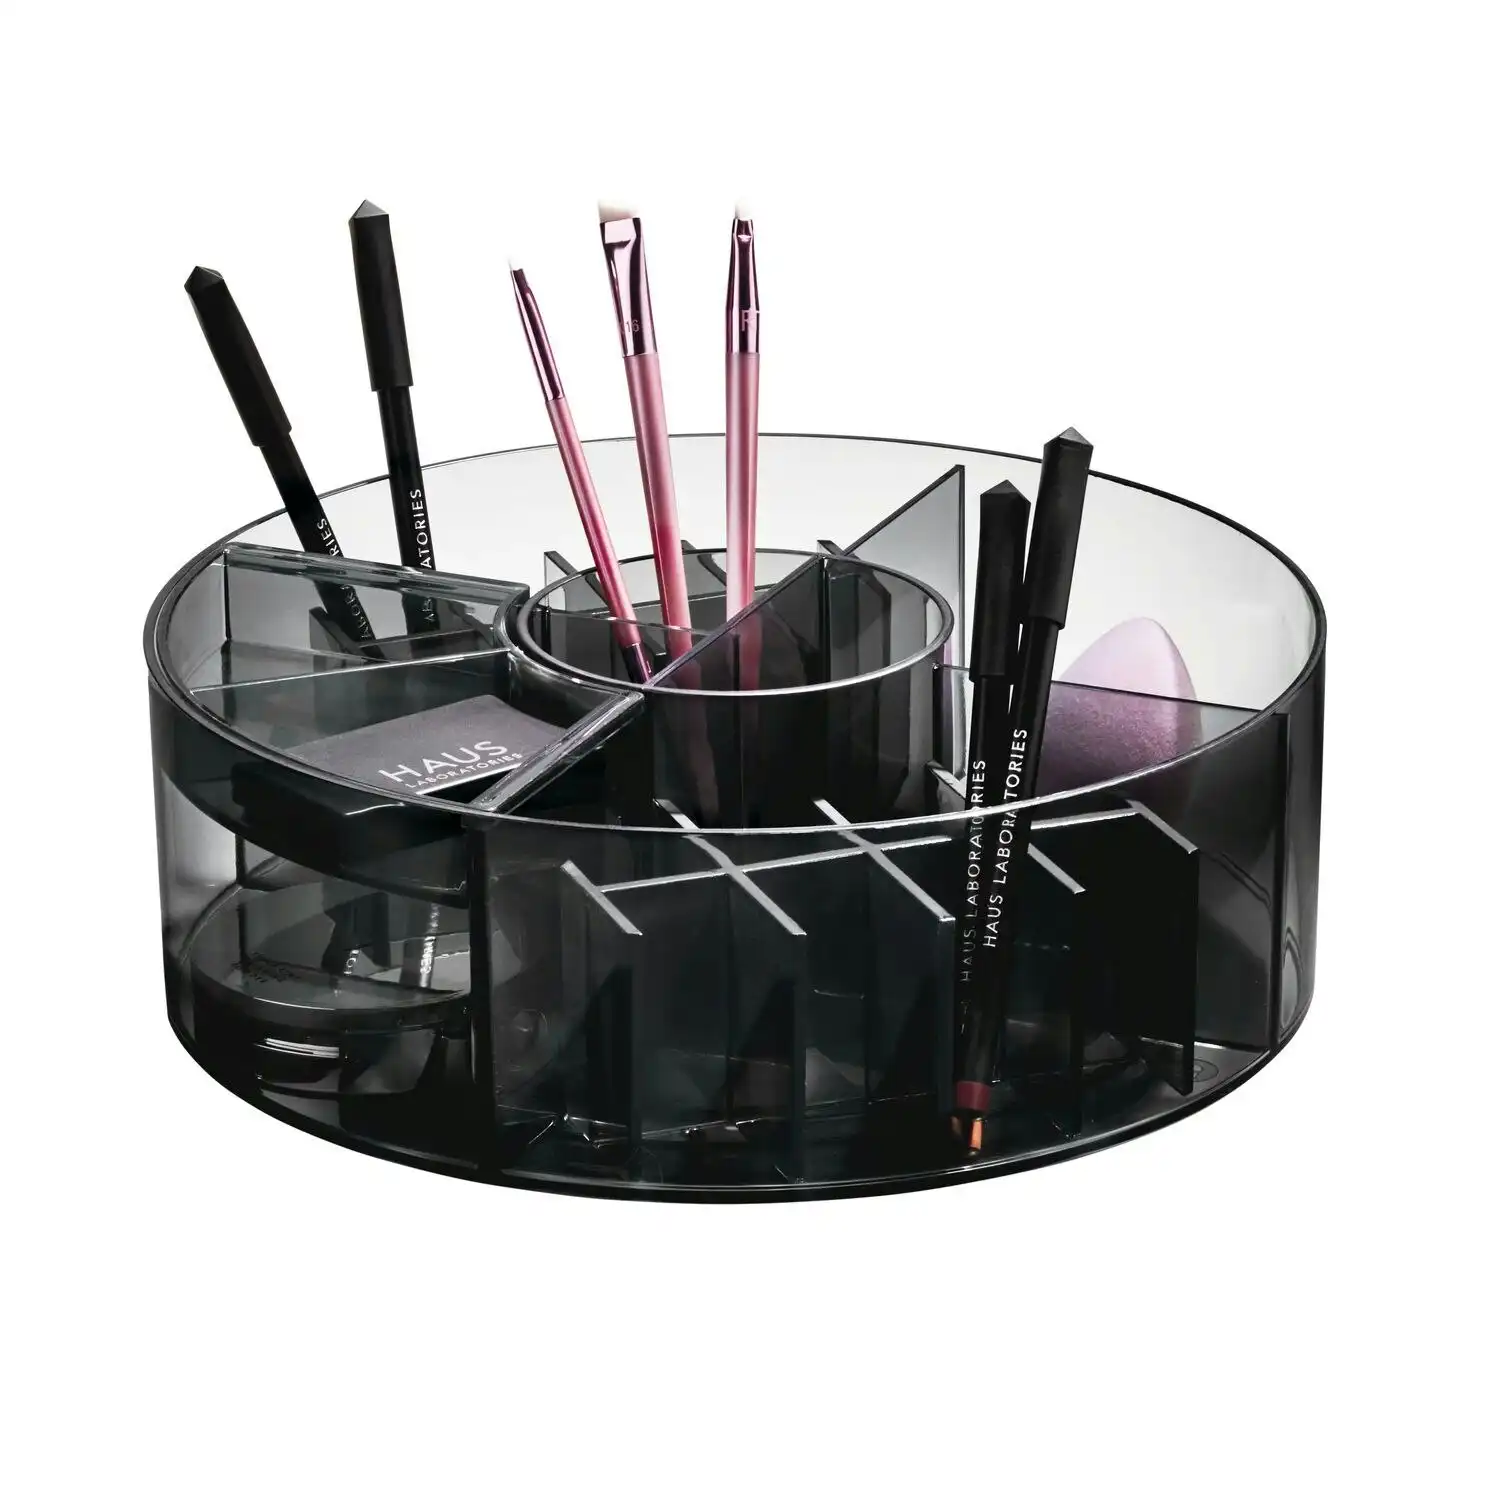 Idesign 25.4cm Cosmetic Carousel Makeup Storage Organiser Smoke/Matte Black